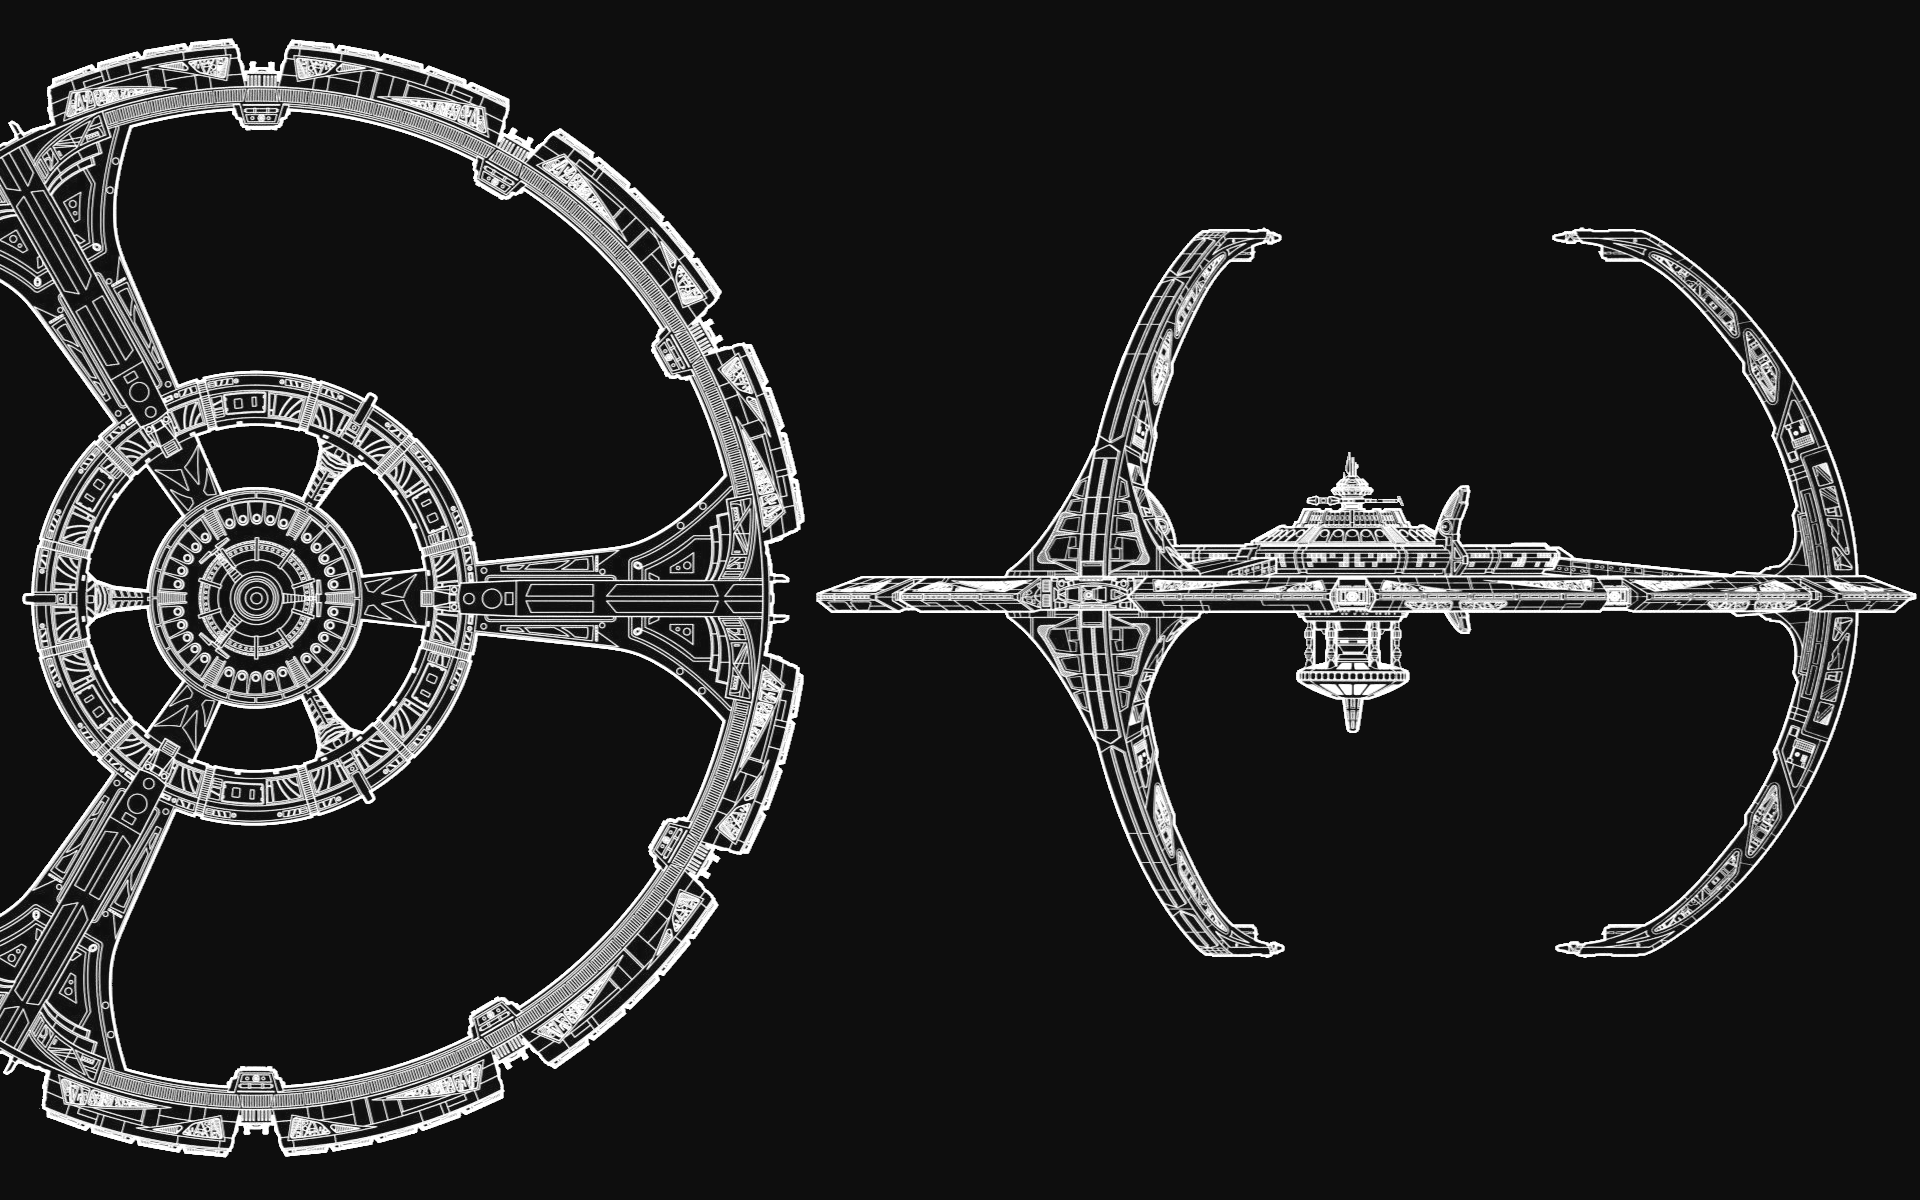 Deep Space Nine Station, một trạm không gian được xem là kinh điển trong thế giới phim khoa học viễn tưởng. Với bức ảnh này, bạn sẽ được tận mắt chiêm ngưỡng cảnh tượng ấn tượng của trạm đóng vai trò quan trọng trong cuộc phiêu lưu thám hiểm không gian. 